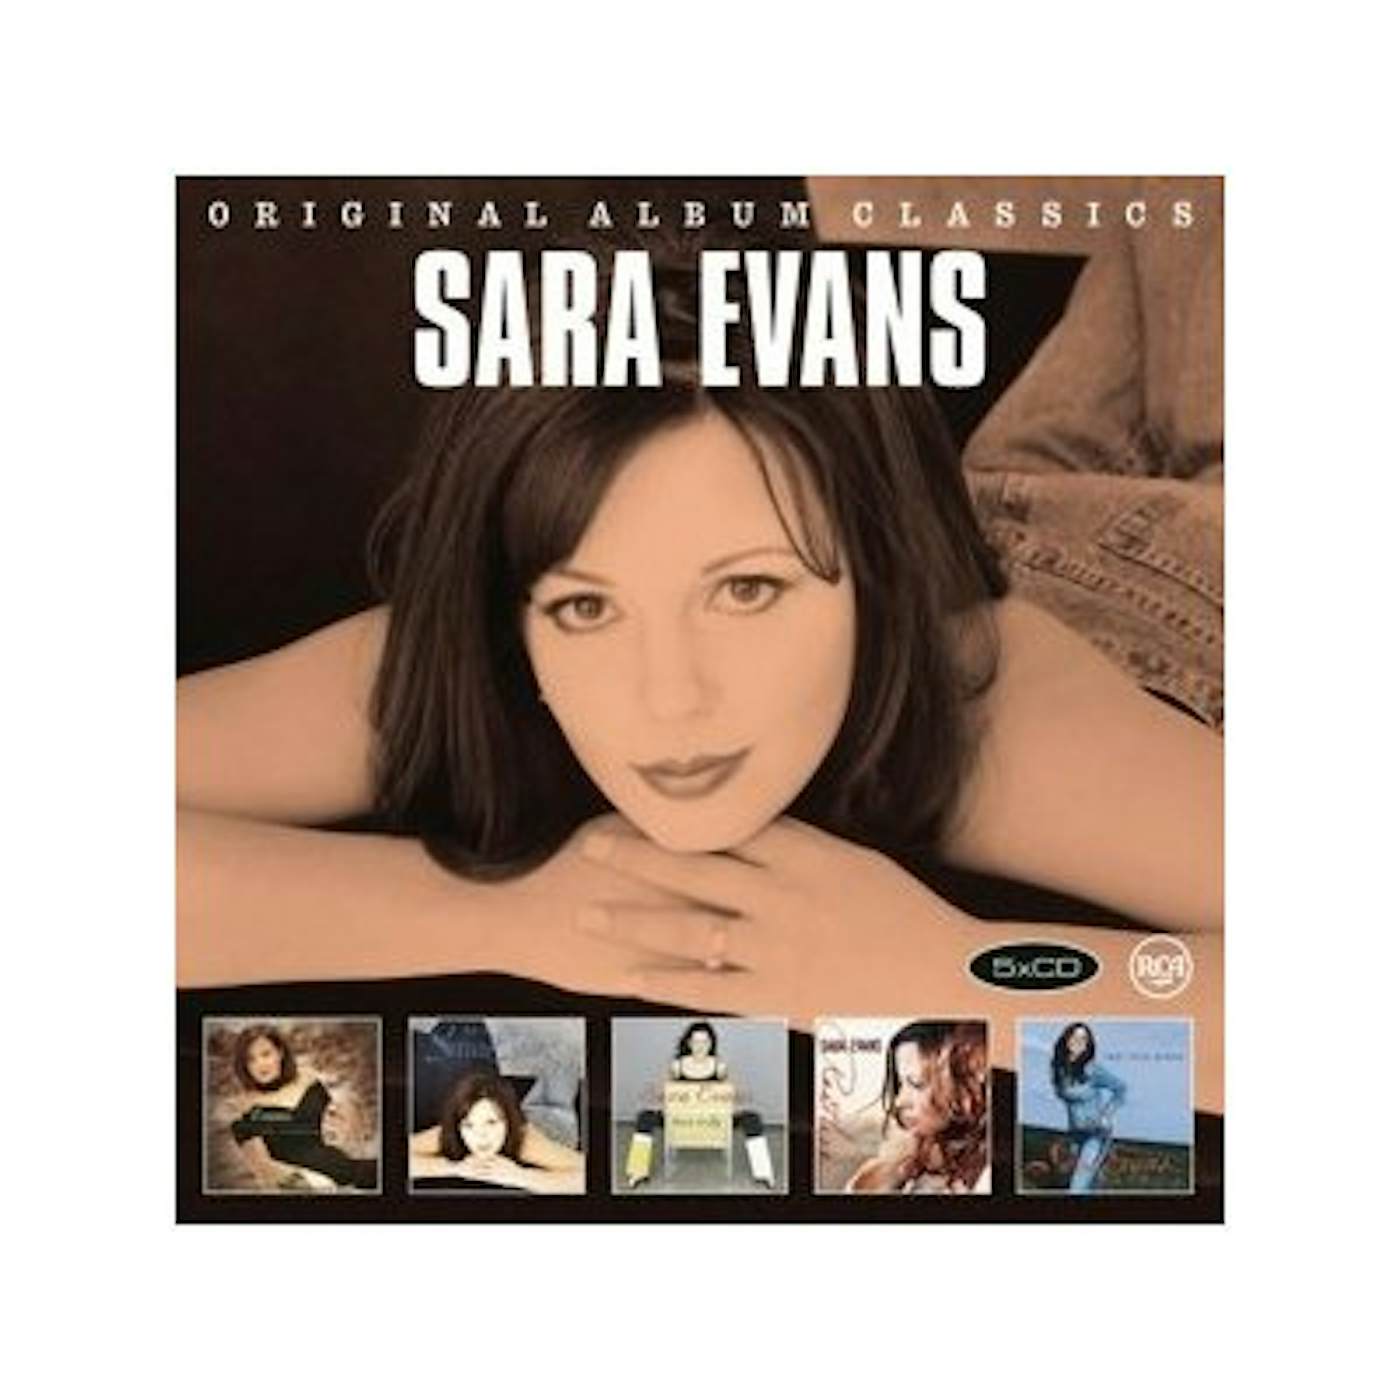 Sara Evans ORIGINAL ALBUM CLASSICS CD